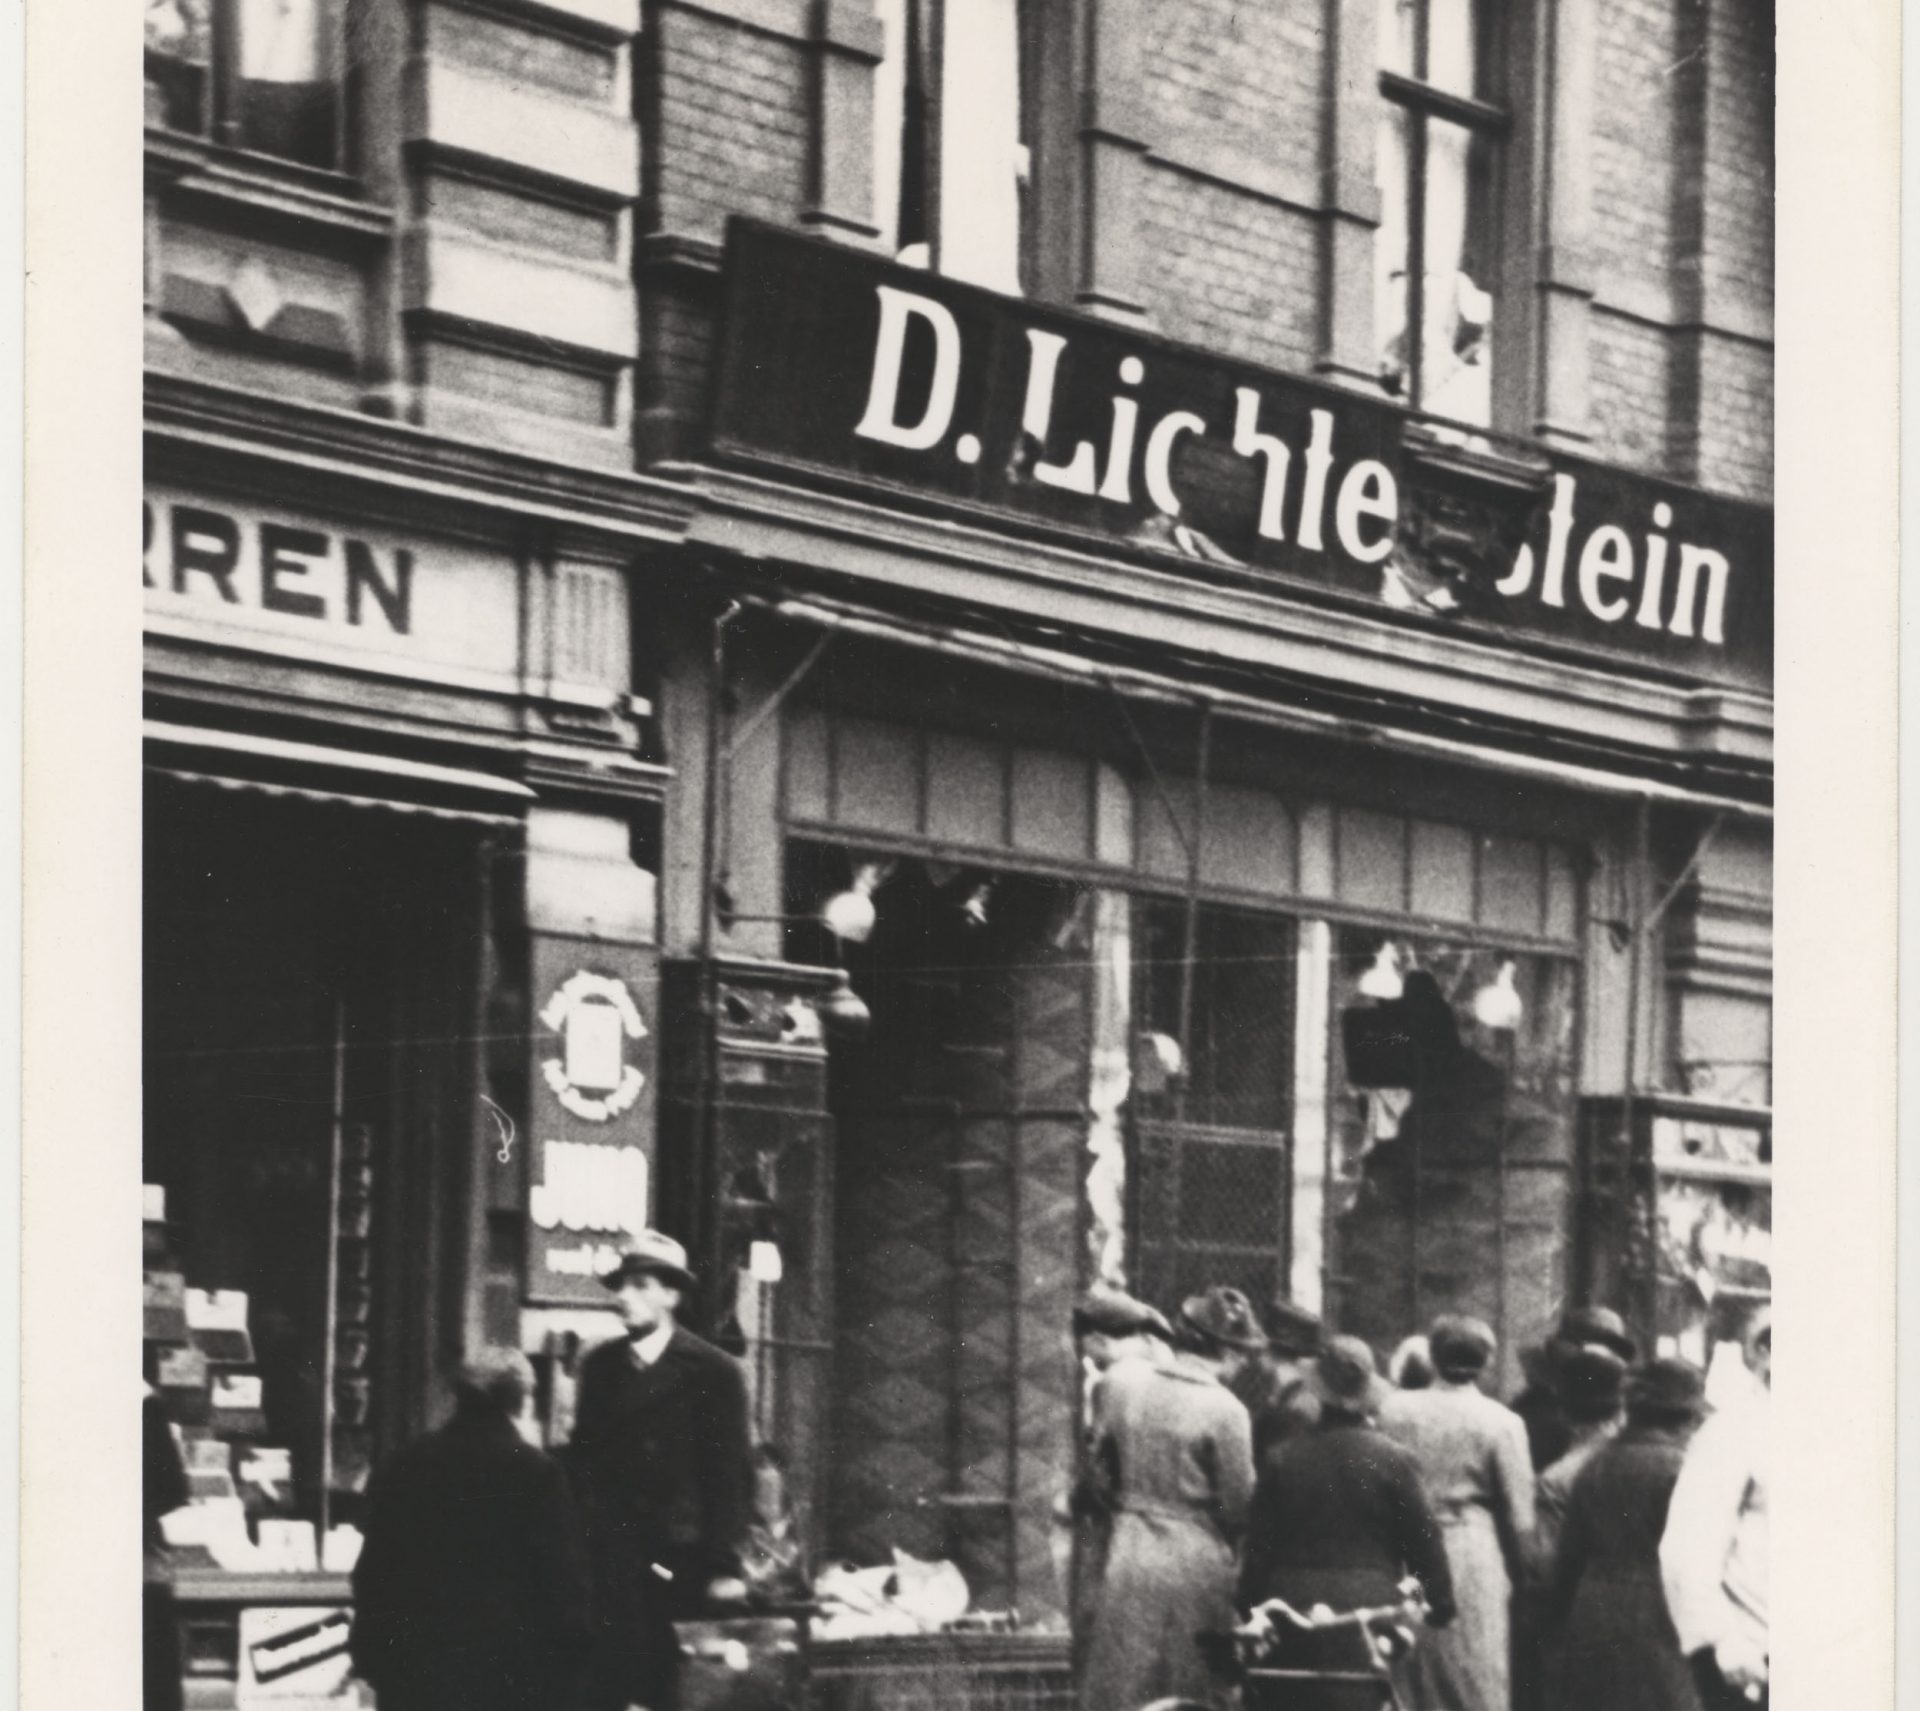 Cette photographie montre une devanture de magasin juif vandalisée au cours de Kristallnacht. Des passants regardent à l’intérieur d’une vitrine brisée sous l’écriteau ‘’D. Lichtenstein’’.